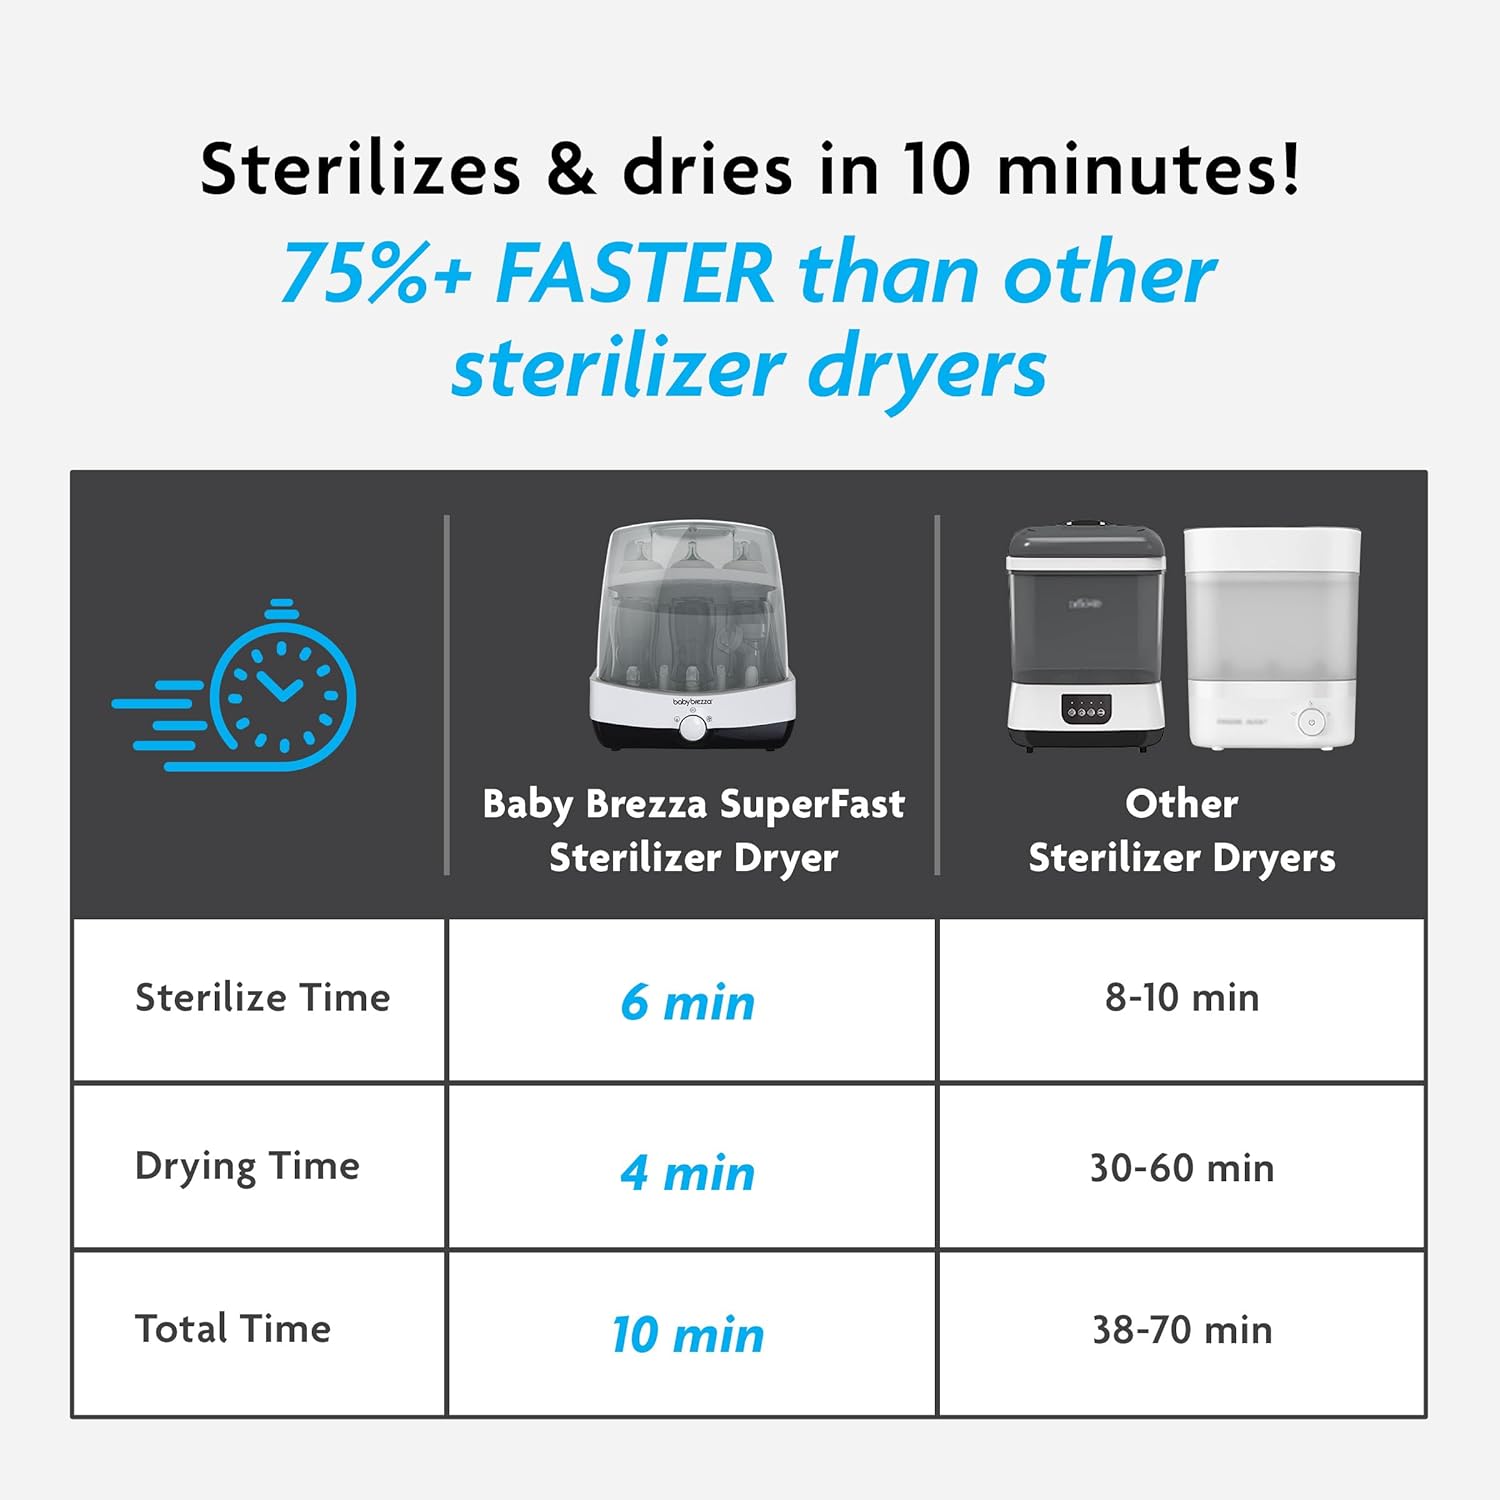 Baby Brezza Super-Fast Sterilizer Dryer